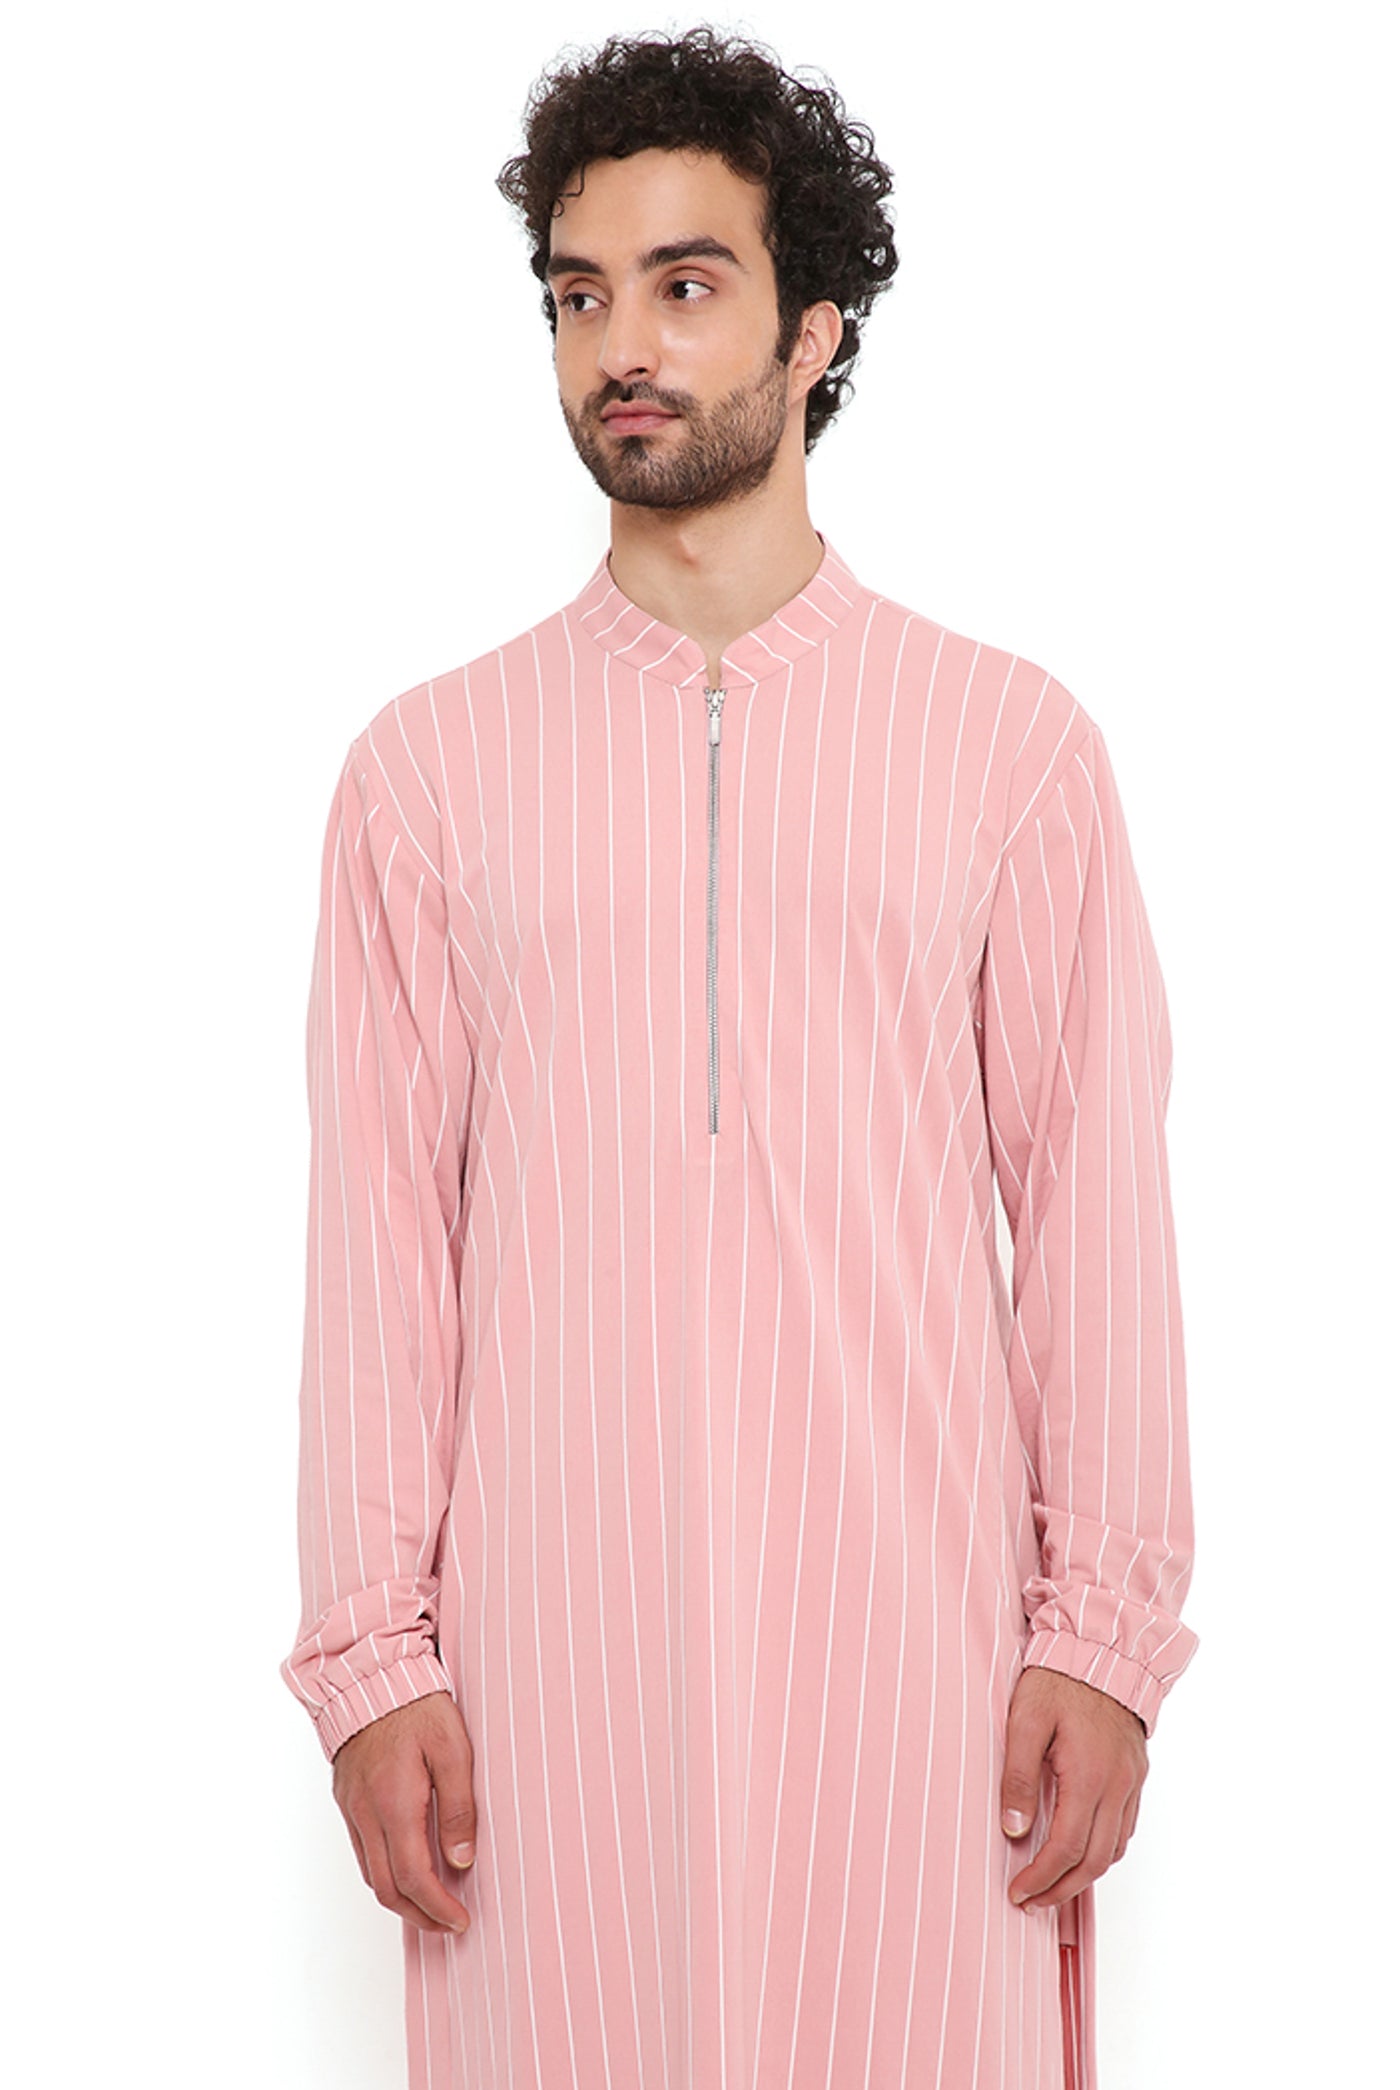 payal singhal menswear Rose Pink Lycra Stripe Bomber Kurta With Jogger Pants festive indian designer wear online shopping melange singapore